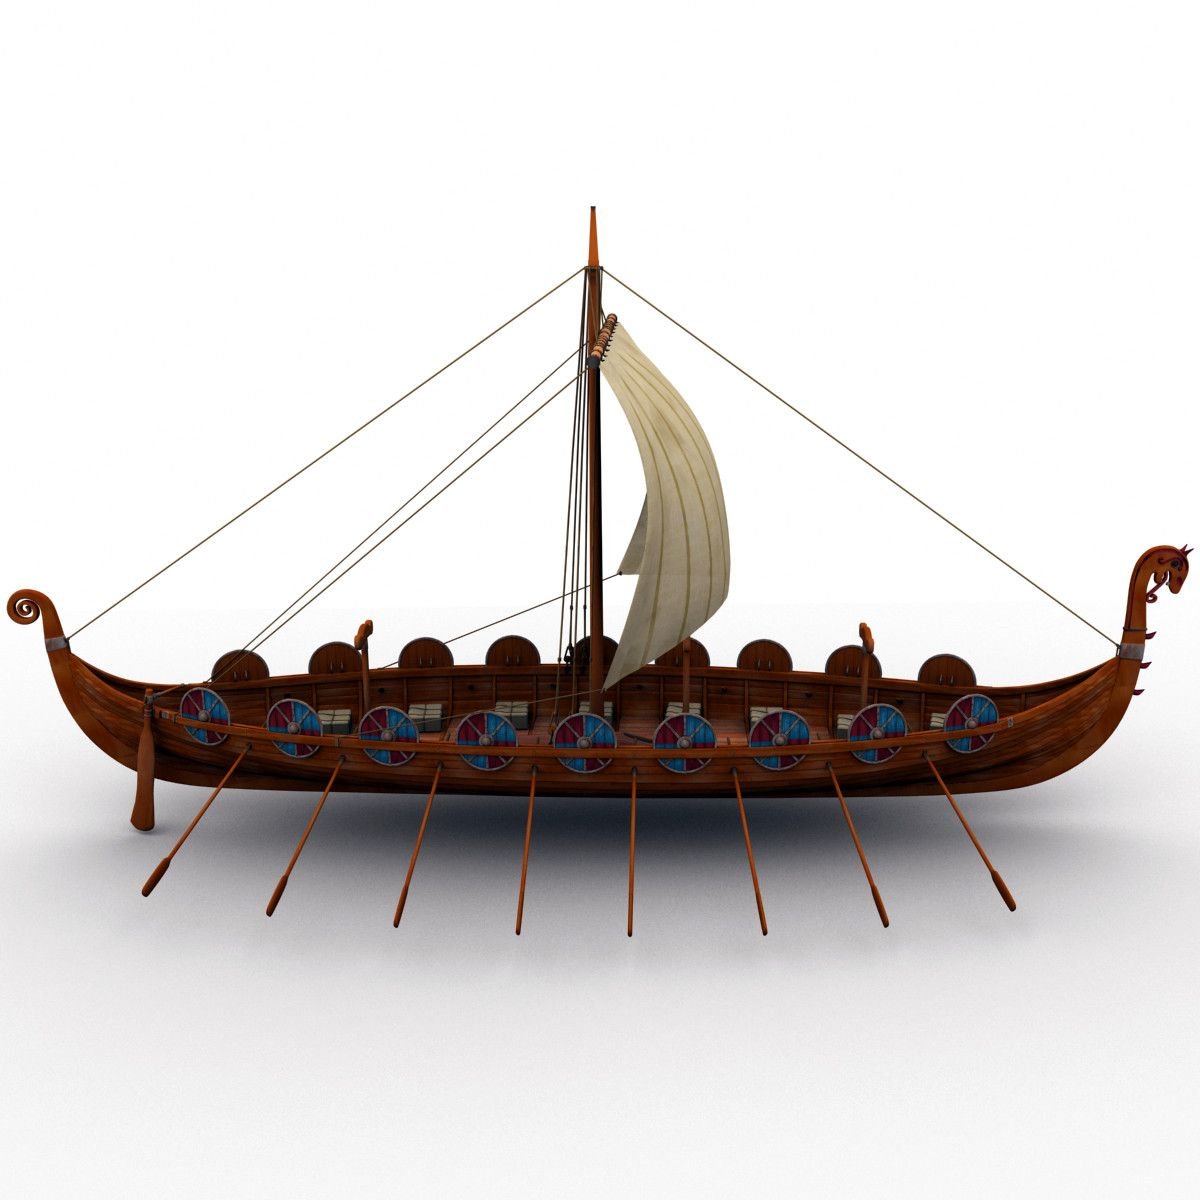 Ладья счет. Ладья Драккар викингов. Лодка викингов дракар. Корабль викингов Драккар 10 век. Модель корабля Viking ship Drakkar 3d модель.